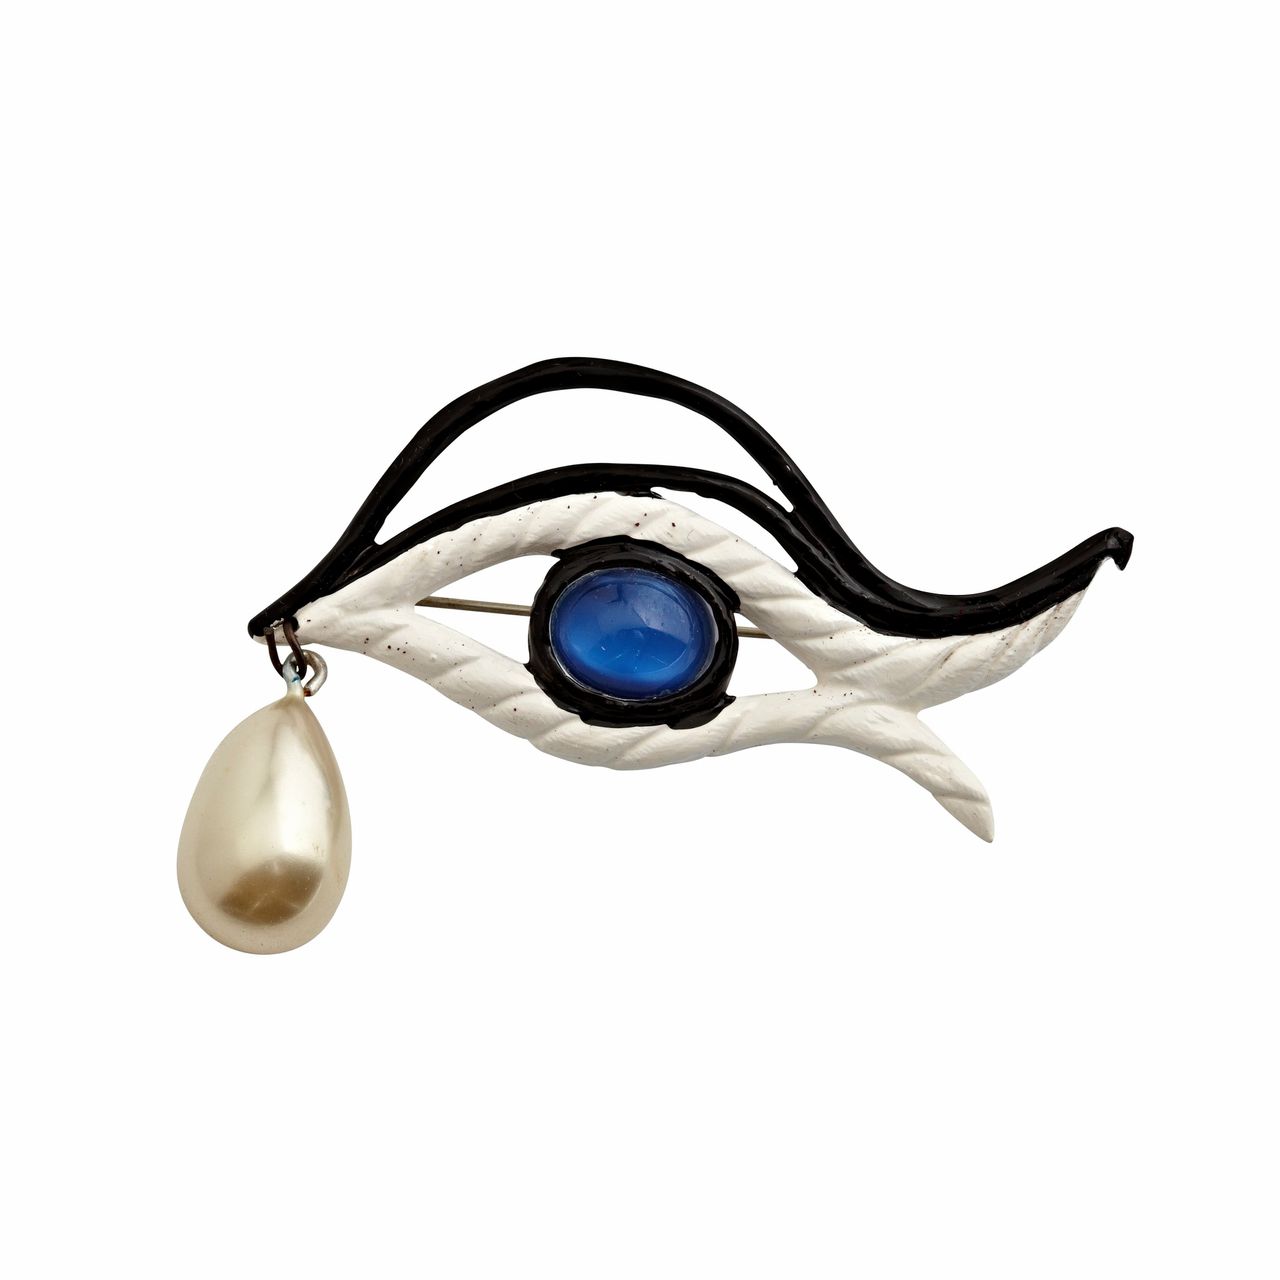 Cocteau ontwierp sieraden voor Elsa Schiaparelli: ook te zien in Den Bosch